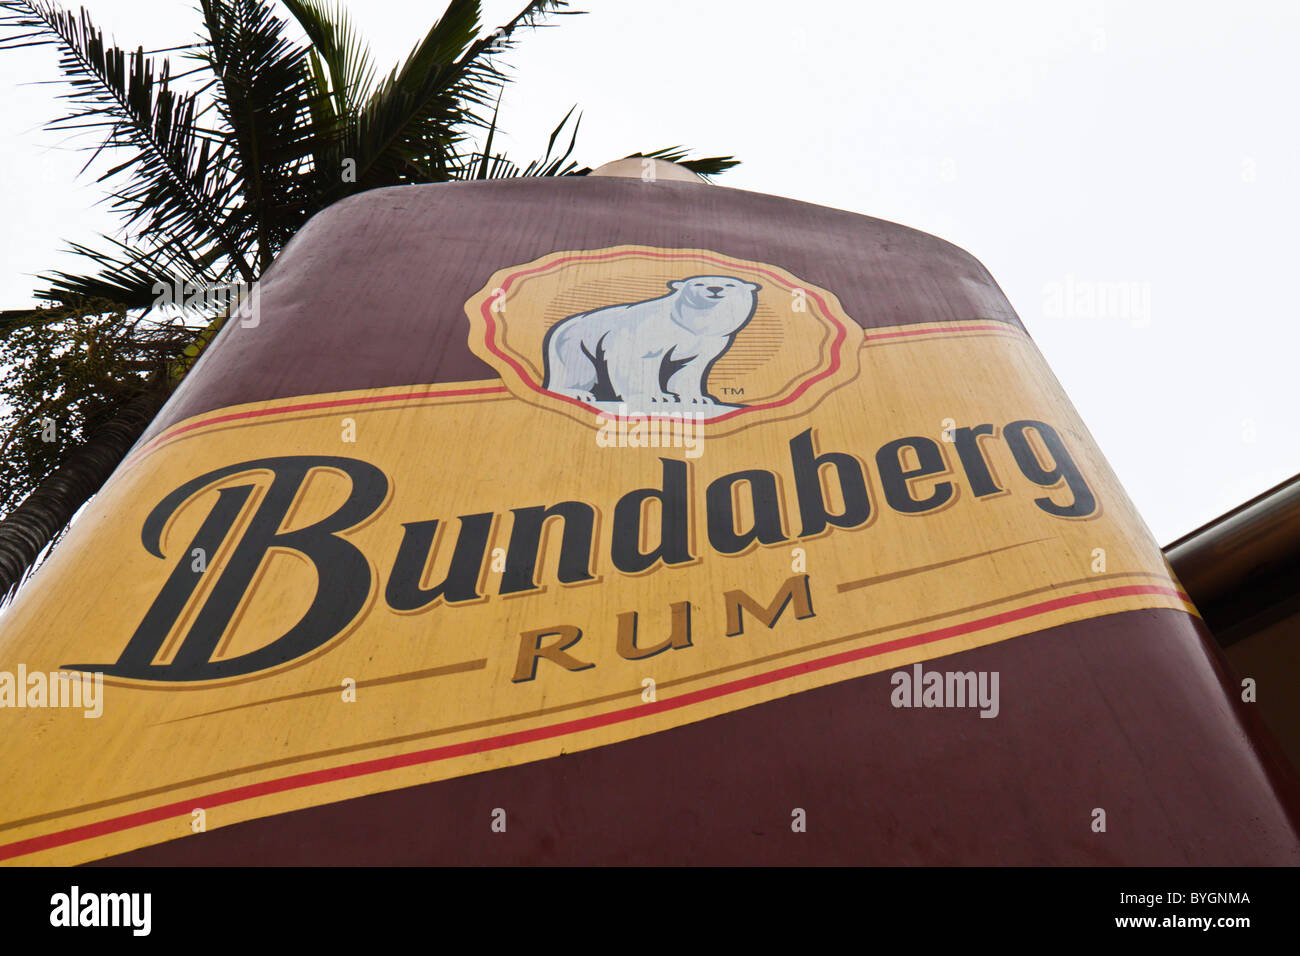 Statua di una bottiglia a Bundaberg Rum fabbrica, Bundaberg, Queensland. A casa di uno di thr più famoud rum al mondo. Foto Stock